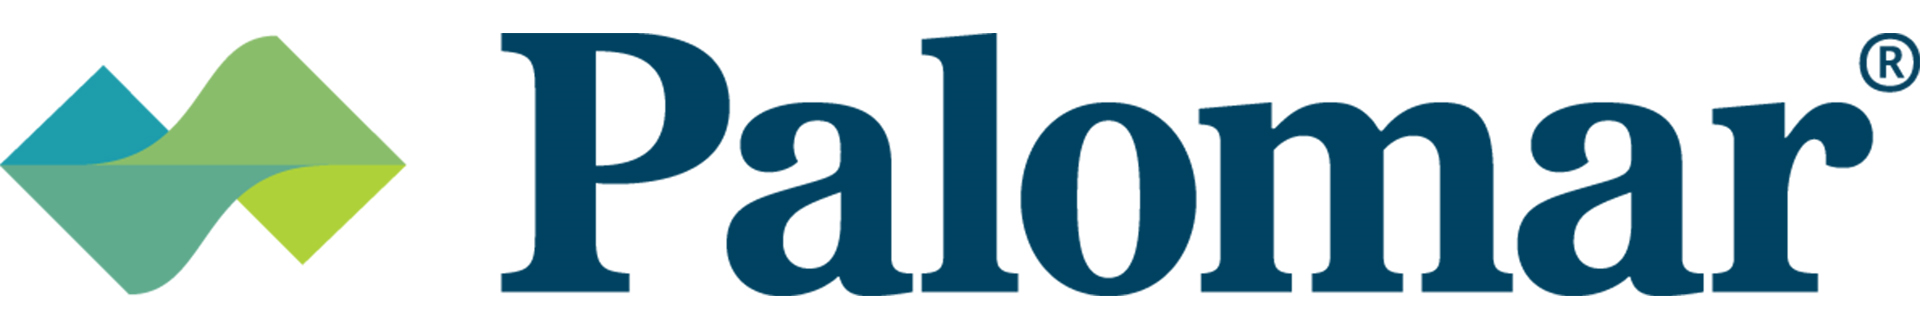 Palomar logo